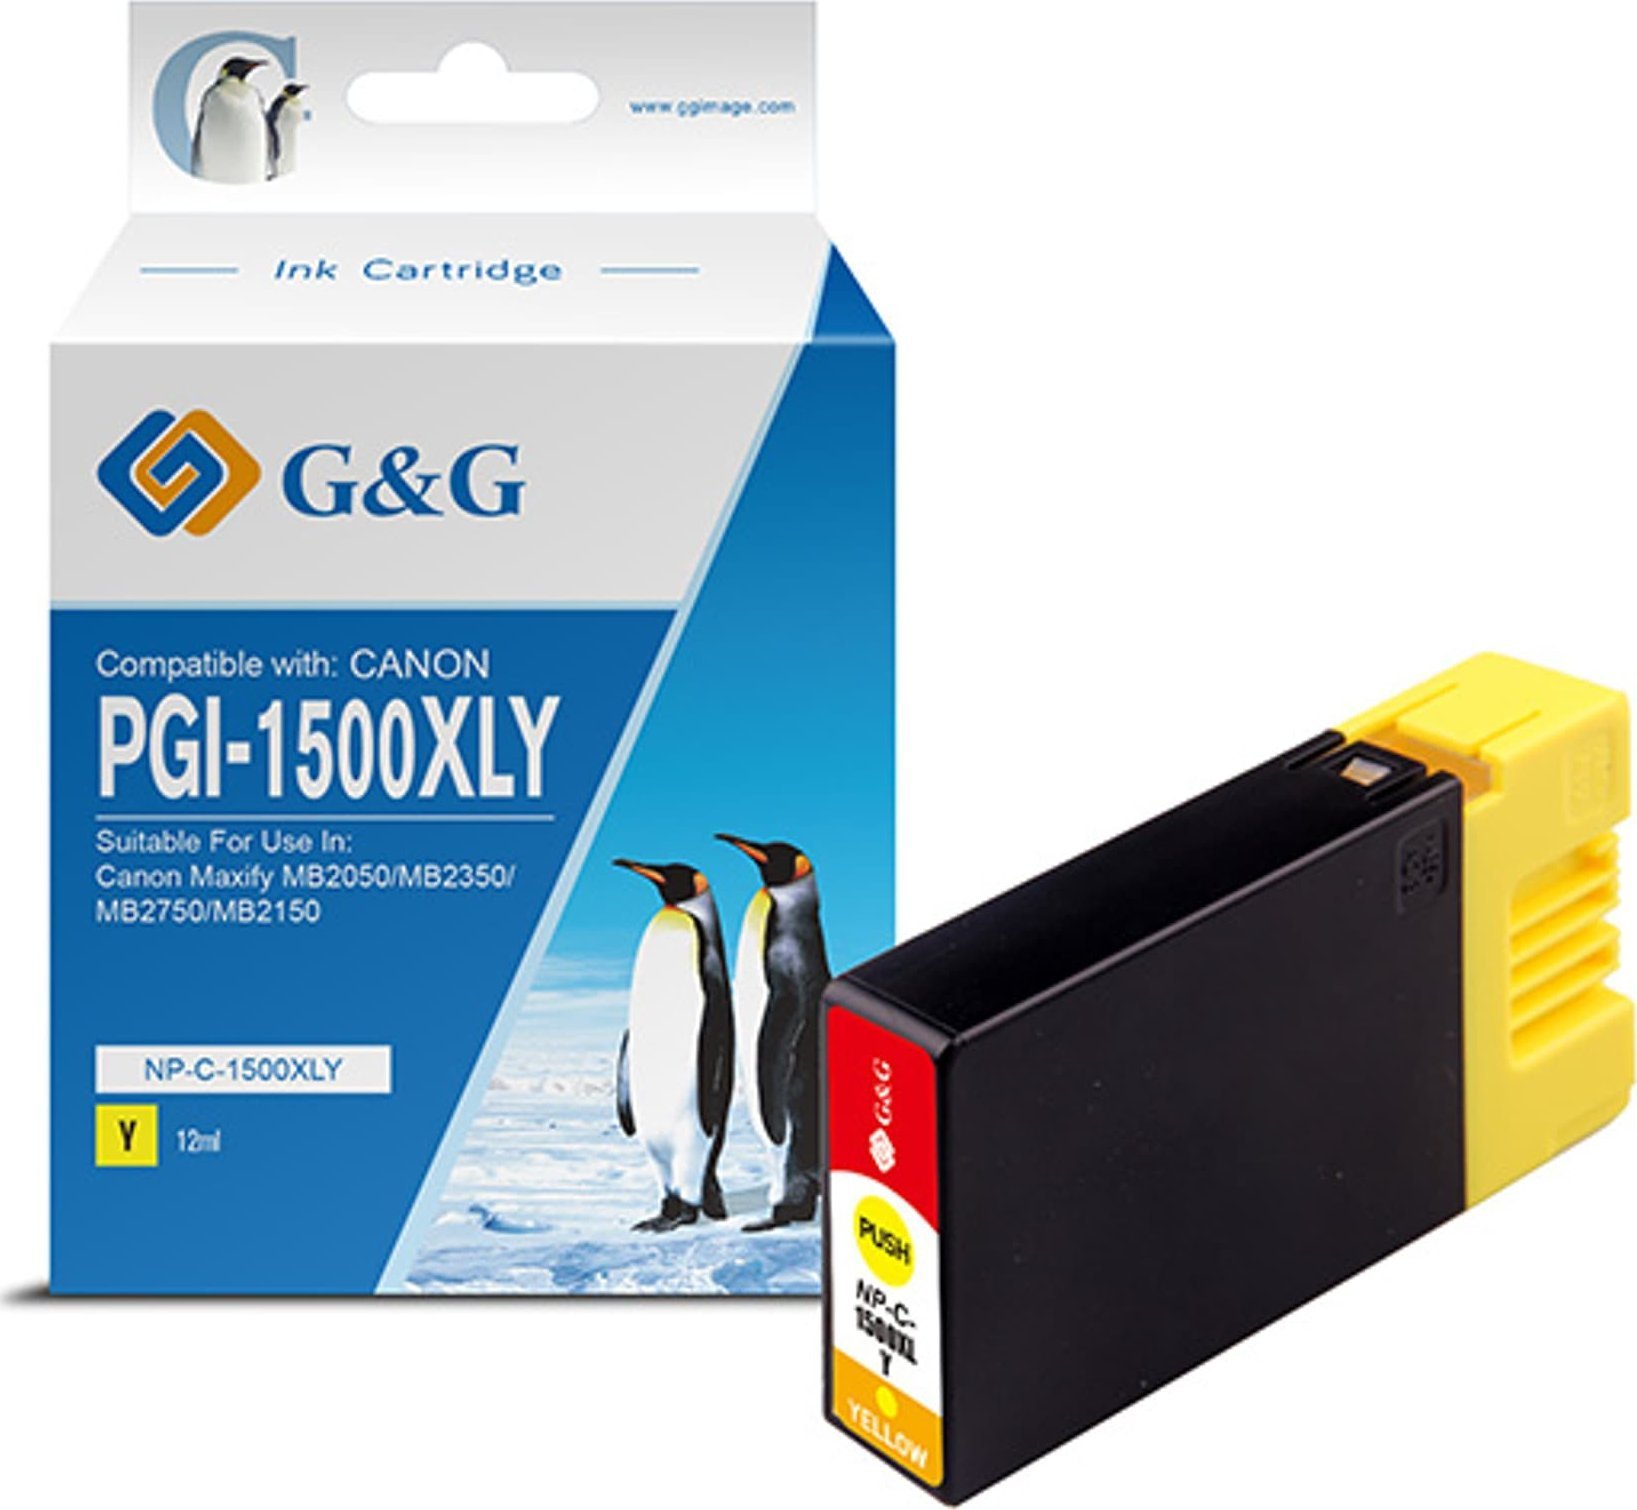 G&G Cerneală/cerneală compatibilă G&G cu PGI 1500XL, galben, NP-C-1500XLY/C, pentru Canon MAXIFY MB2050, MB2350